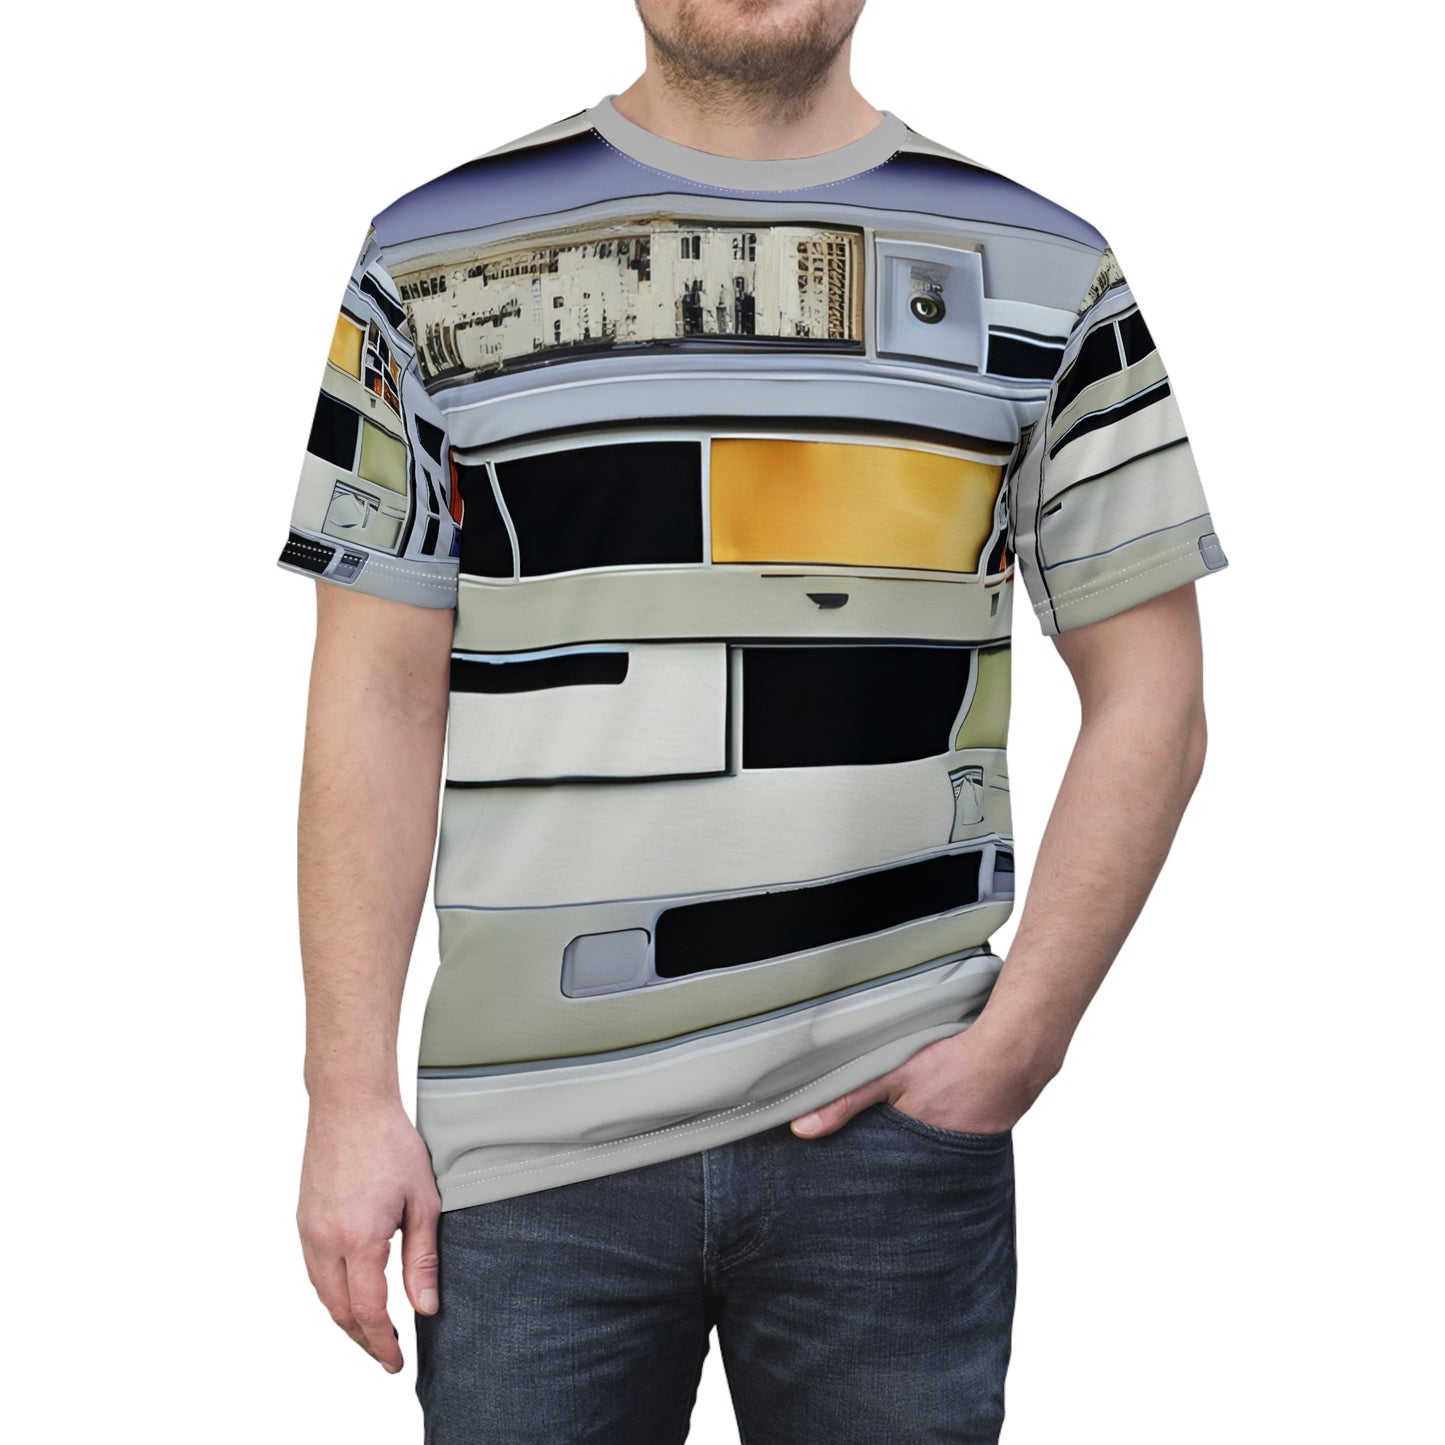 Software Drives Unisex T-Shirt